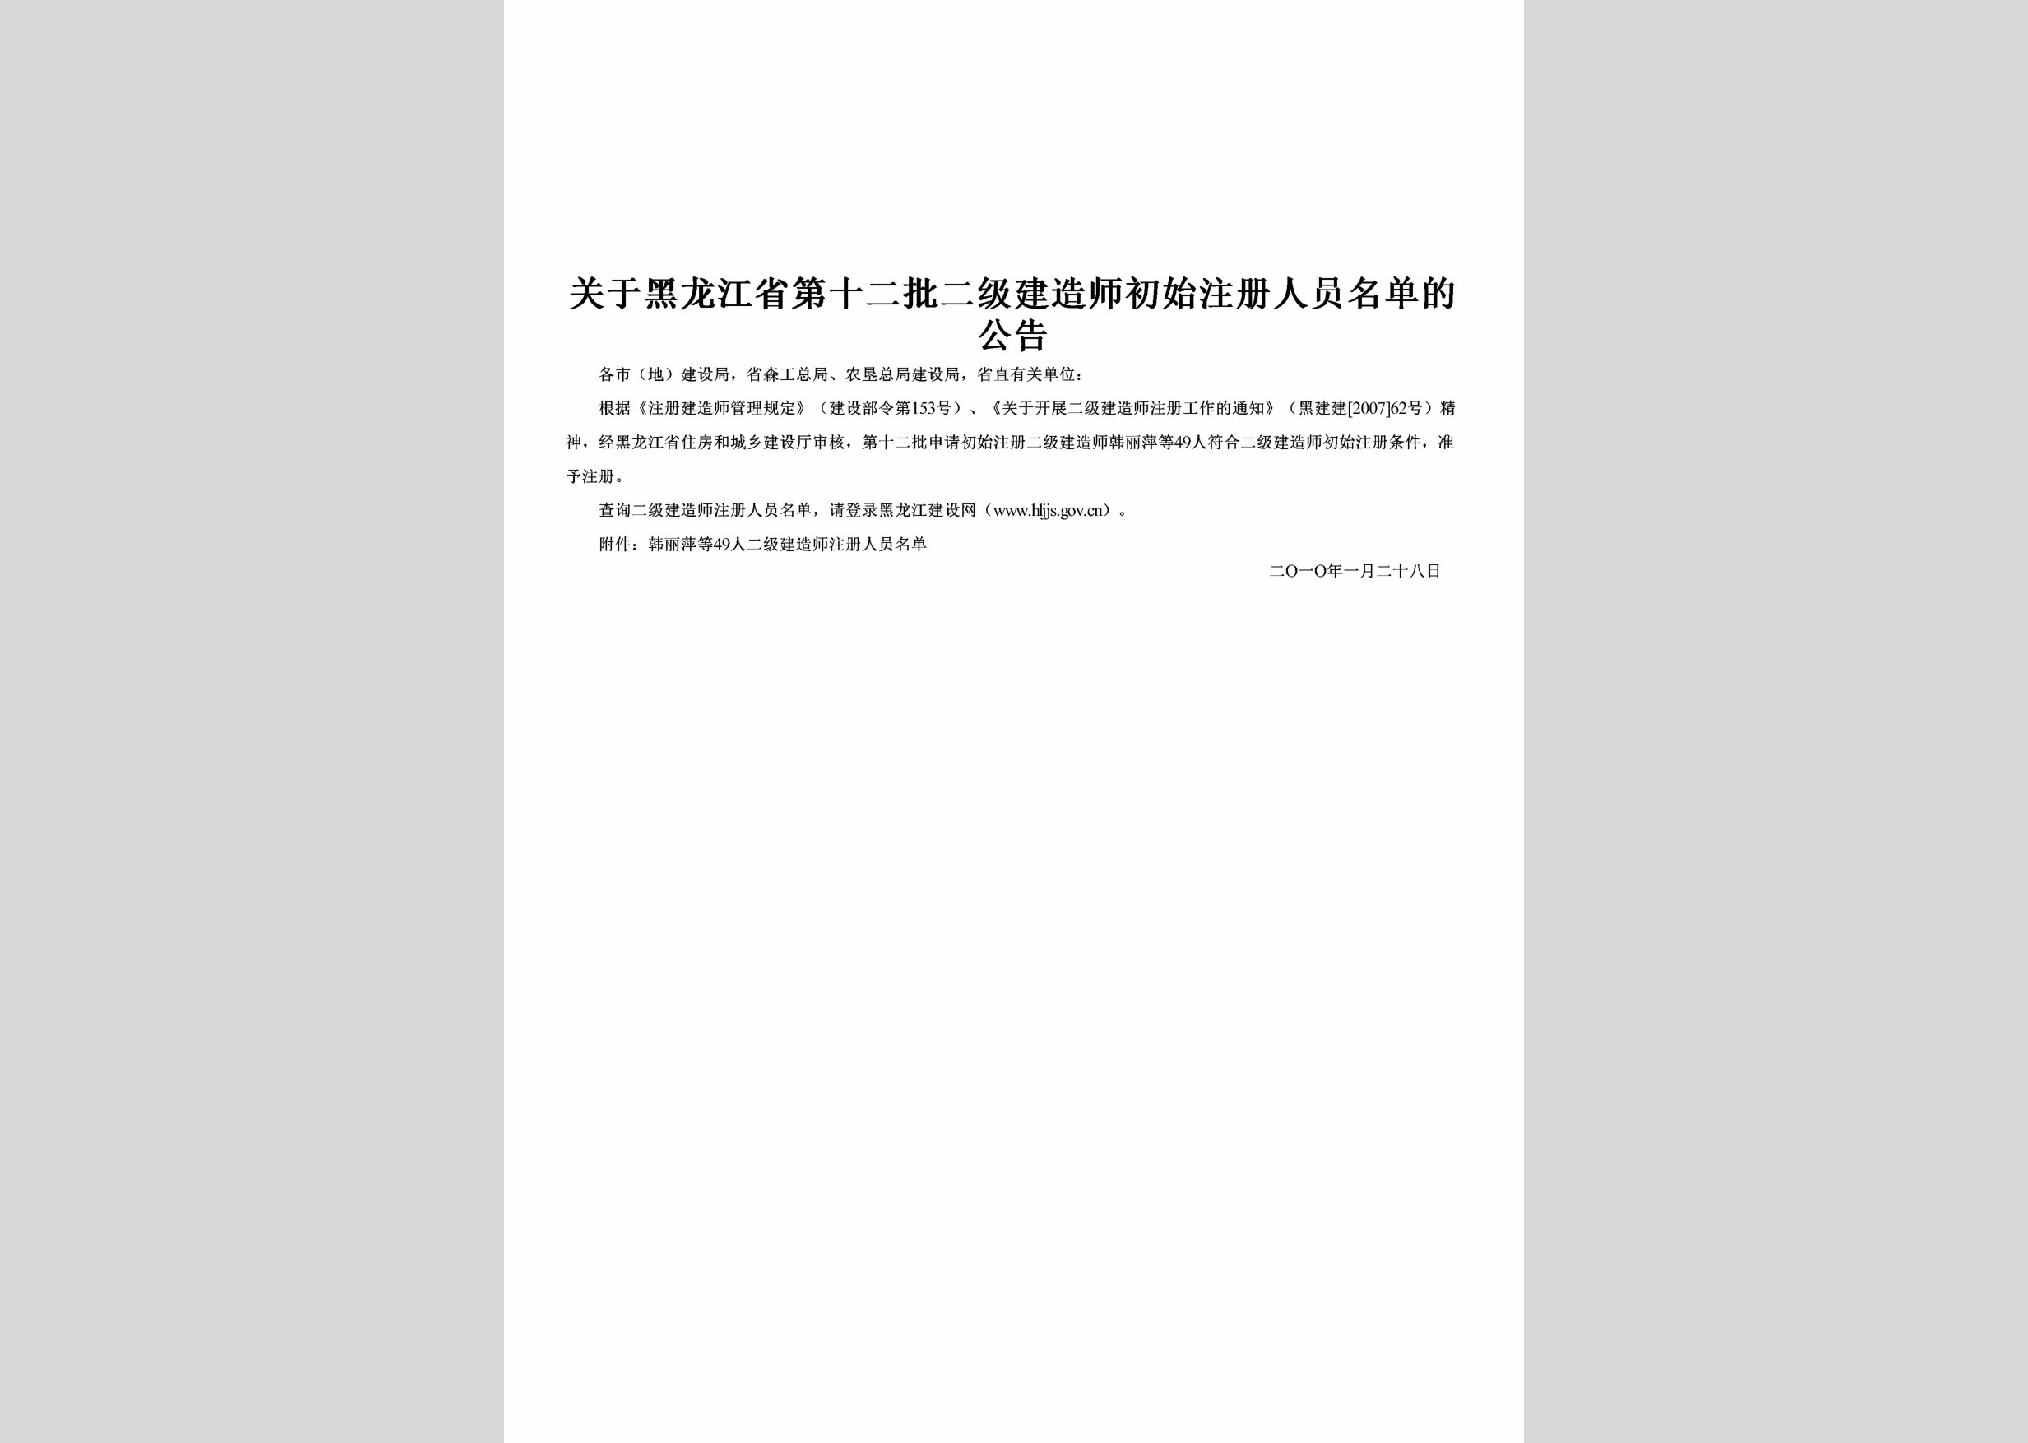 HLJ-DSEPEJJZ-2010：关于黑龙江省第十二批二级建造师初始注册人员名单的公告